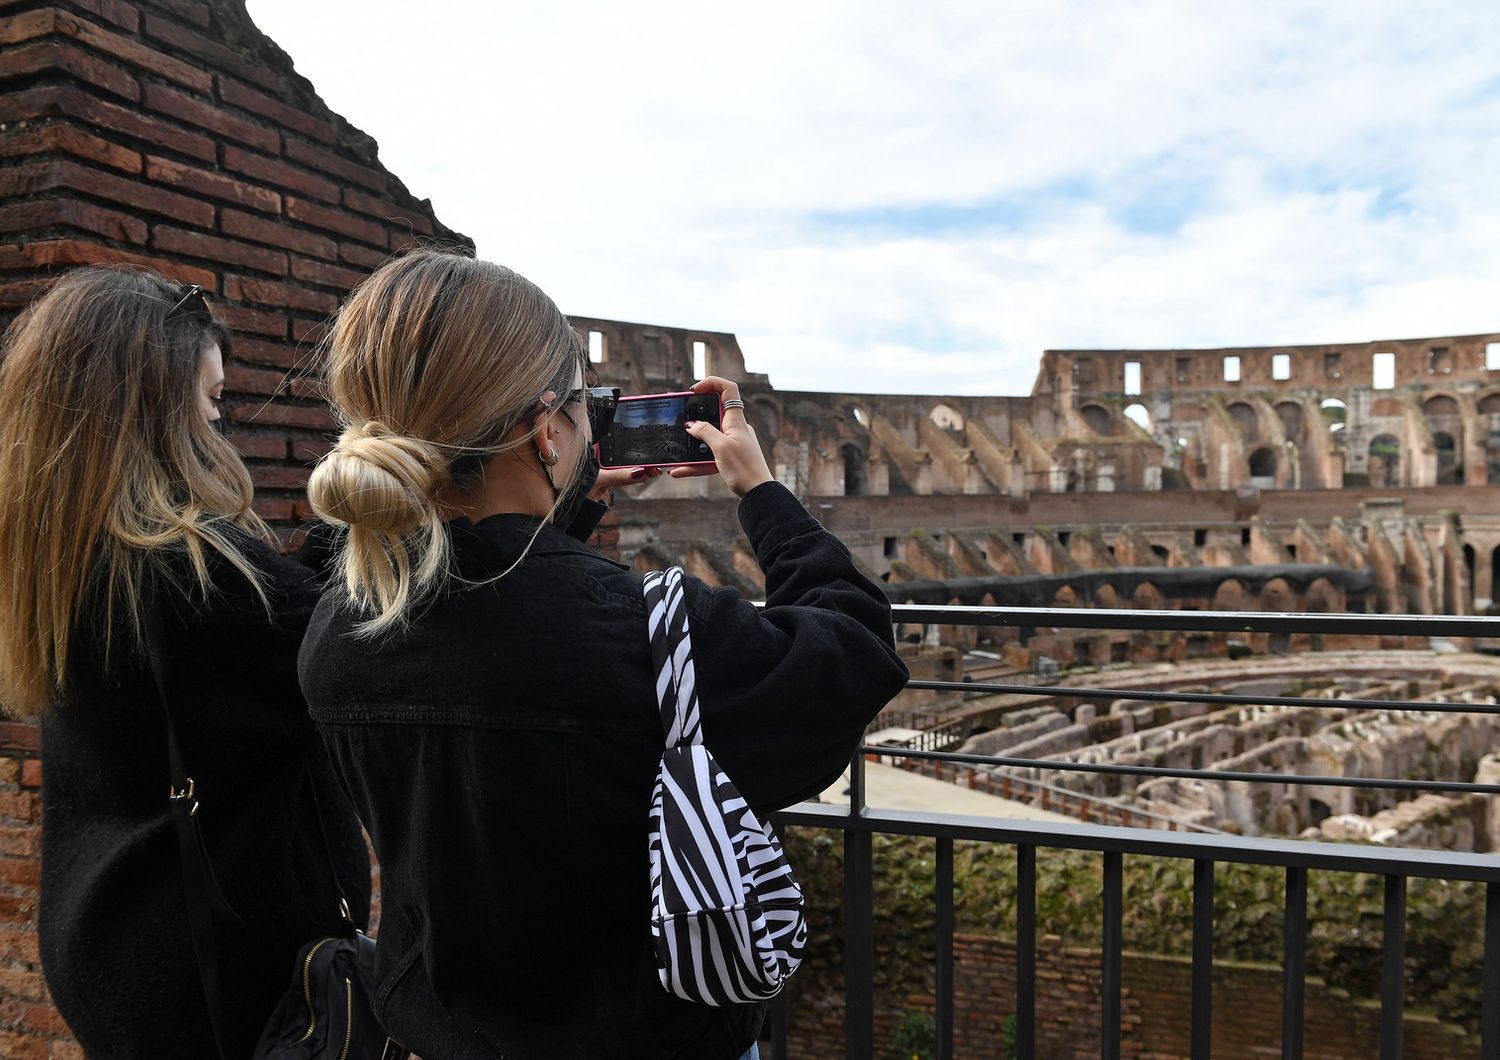 Il Parco Archeologico del Colosseo riapre al pubblico dopo il lockdown durato 87 giorni per la pandemia Covid-19. Nella foto i primi turisti